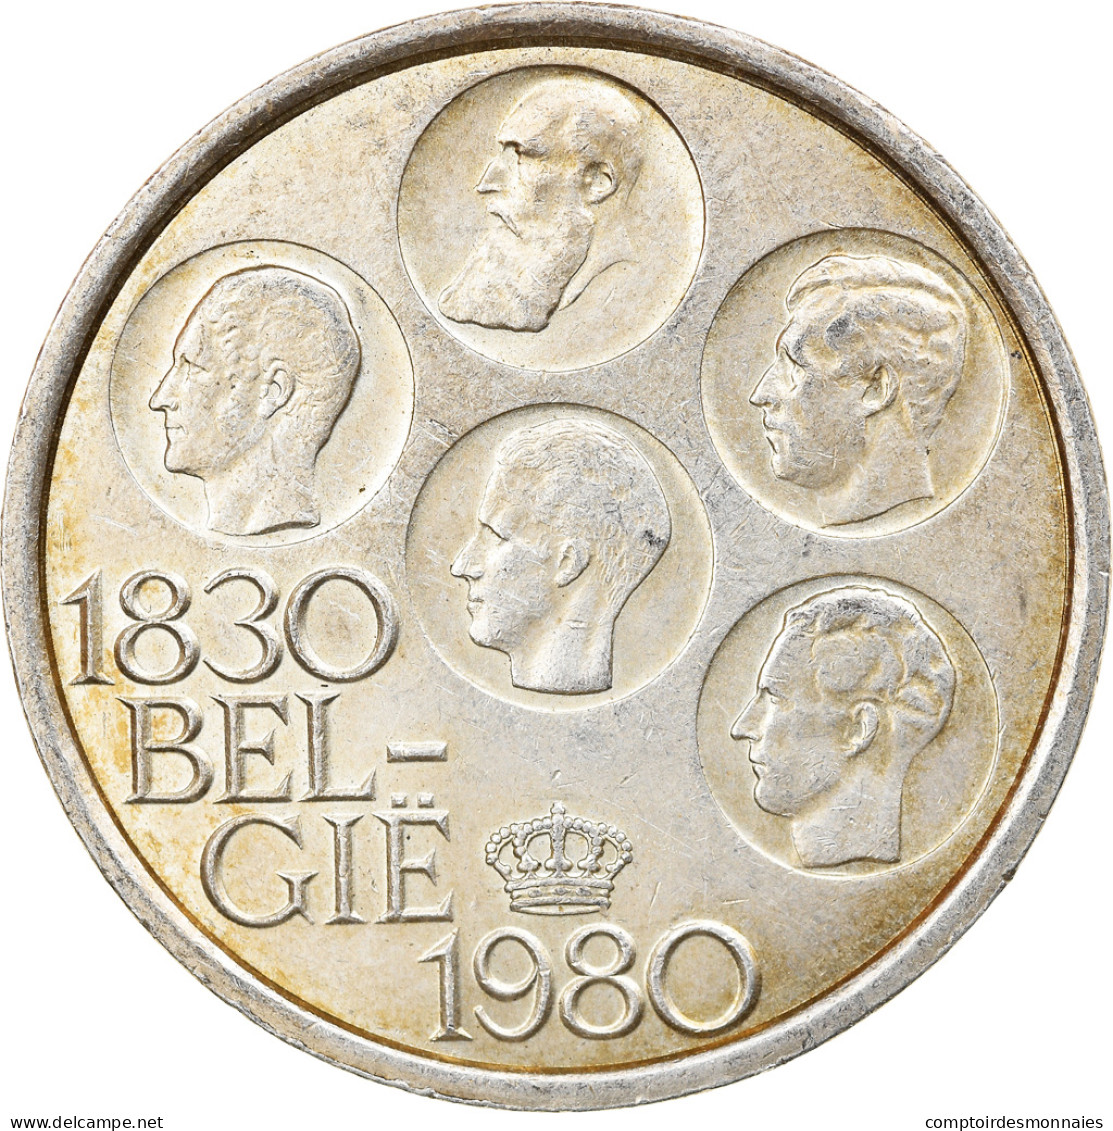 Monnaie, Belgique, Baudouin I, 500 Francs, 500 Frank, 1980, Bruxelles, TTB+ - 500 Francs